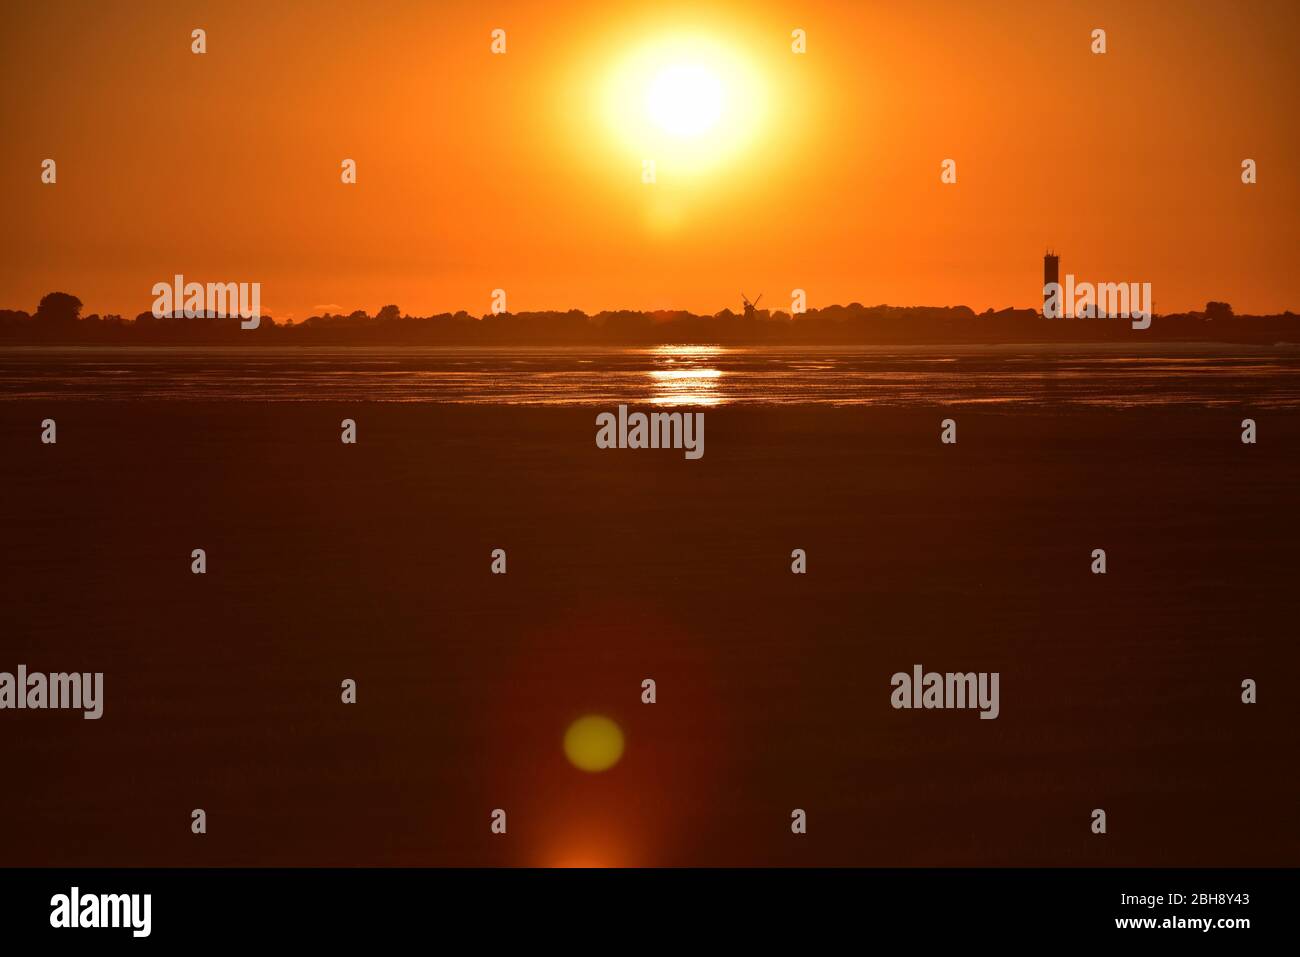 Europe, Germany, Schleswig-Holstein, Nordfriesland, Eiderstedt, sunset Stock Photo